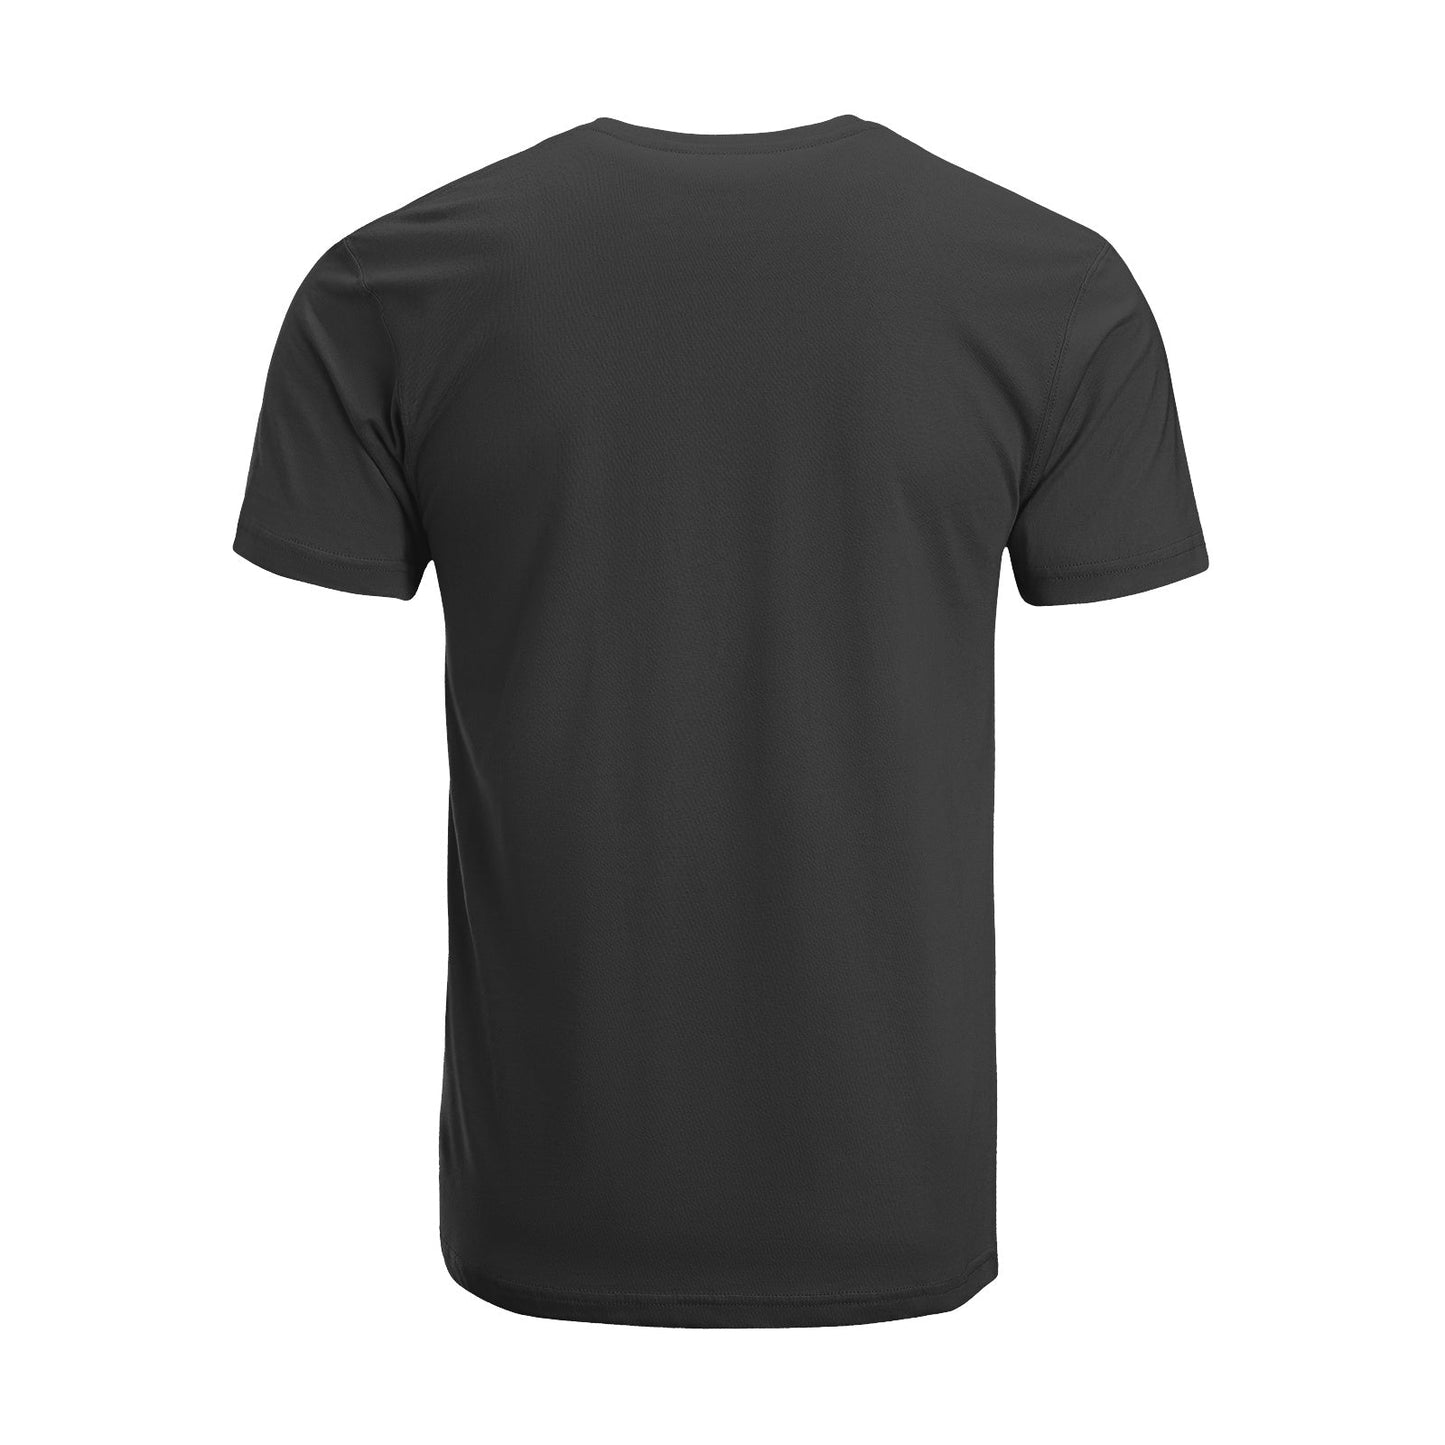 Unisex Short Sleeve Crew Neck Cotton Jersey T-Shirt TRUCK 12